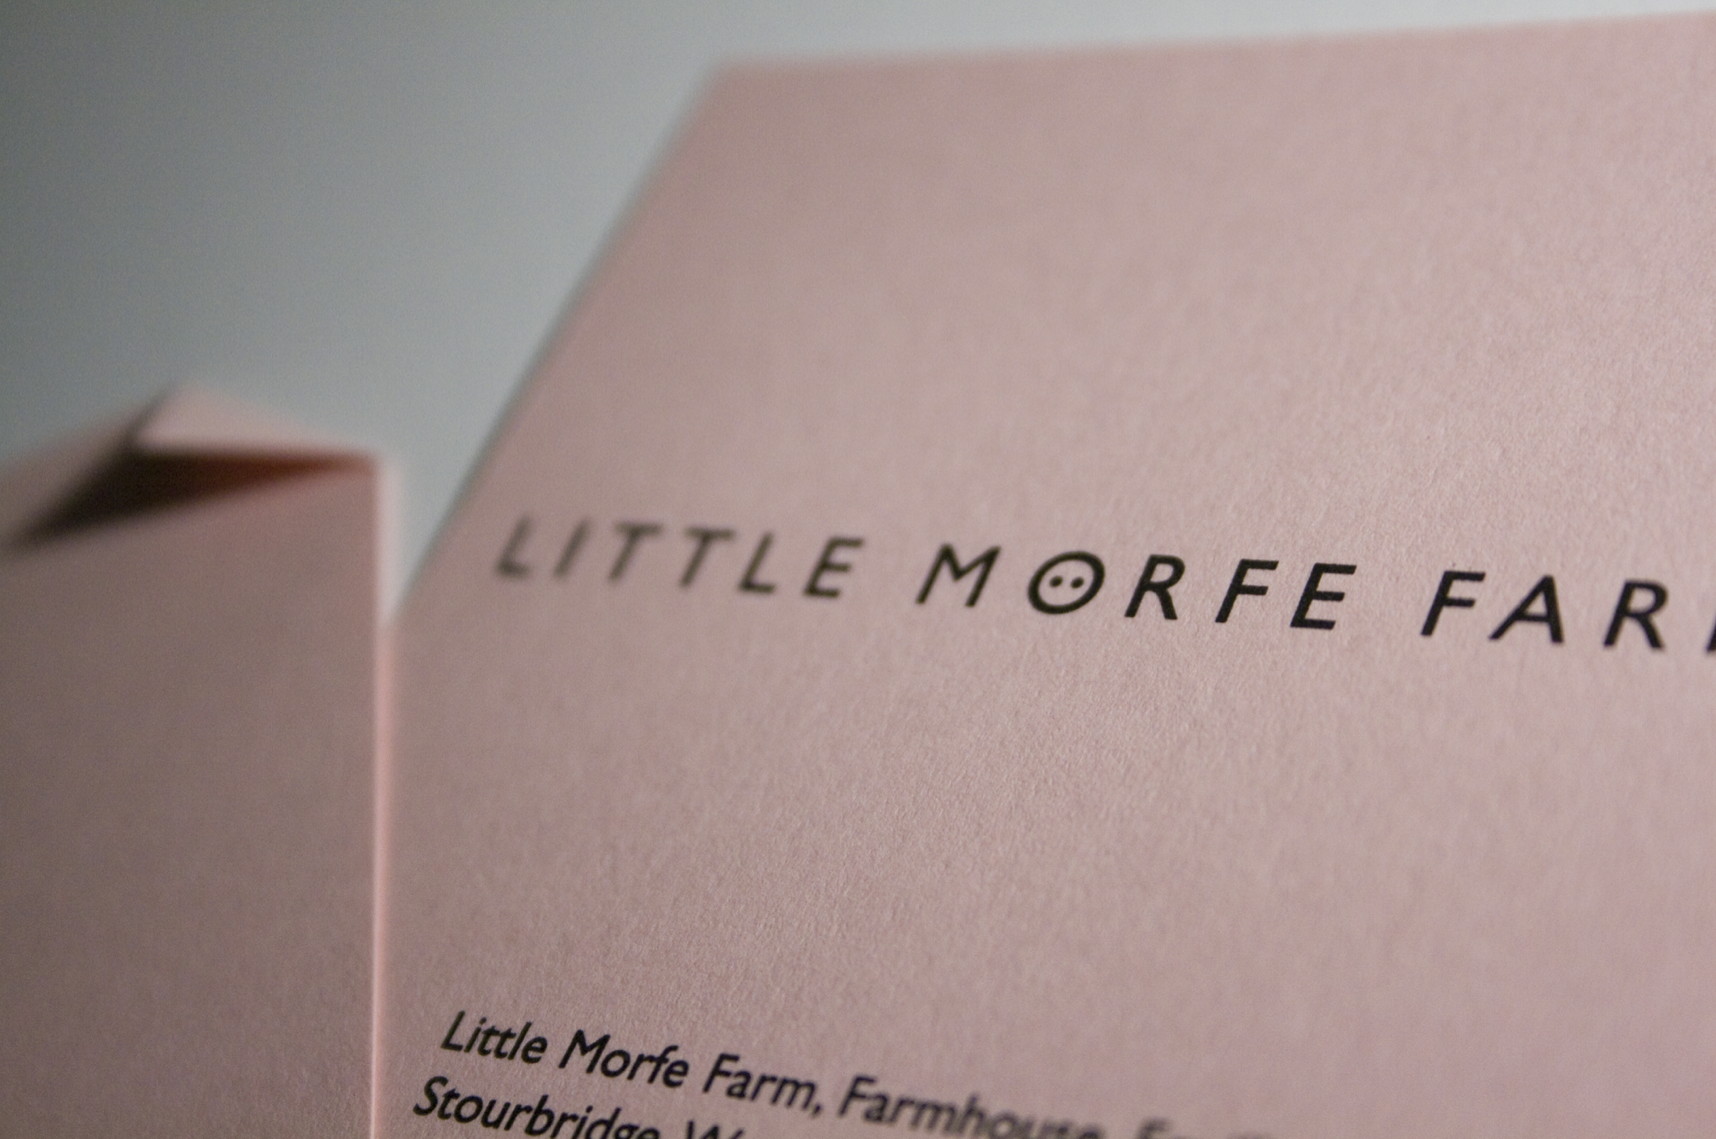 Little Morfe Farm